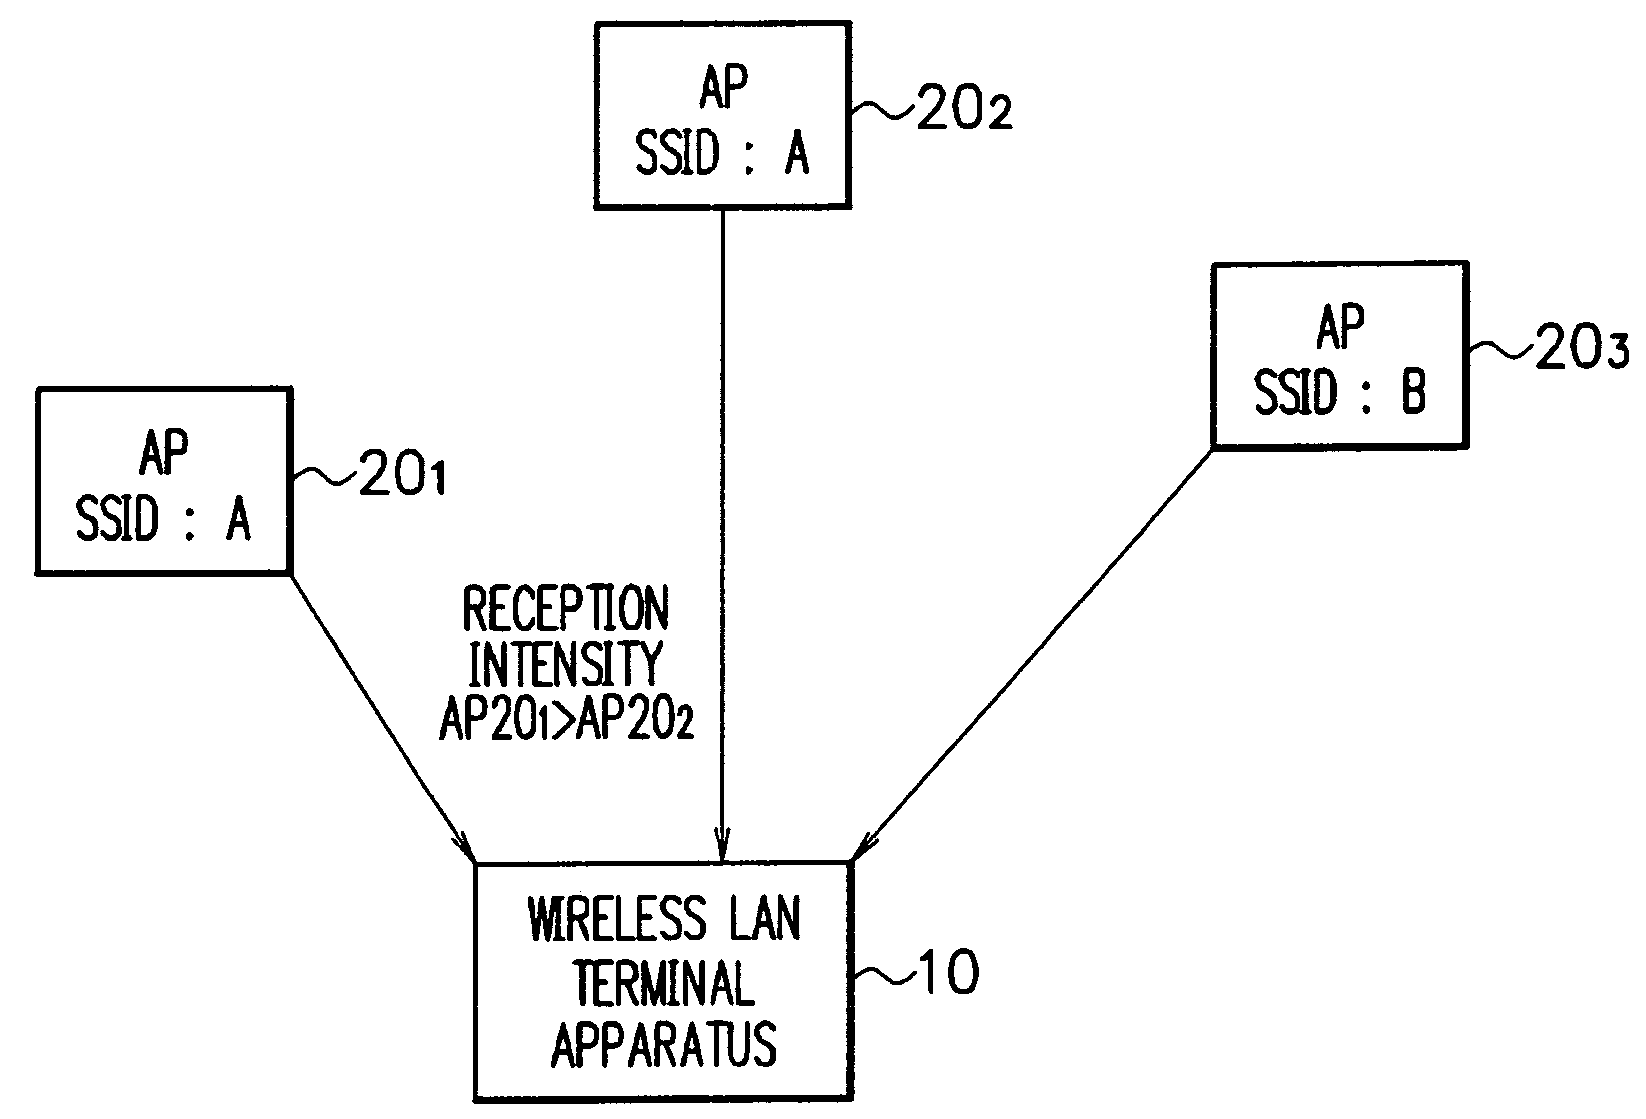 Wireless LAN communication system, wireless LAN connection method, and wireless LAN terminal apparatus